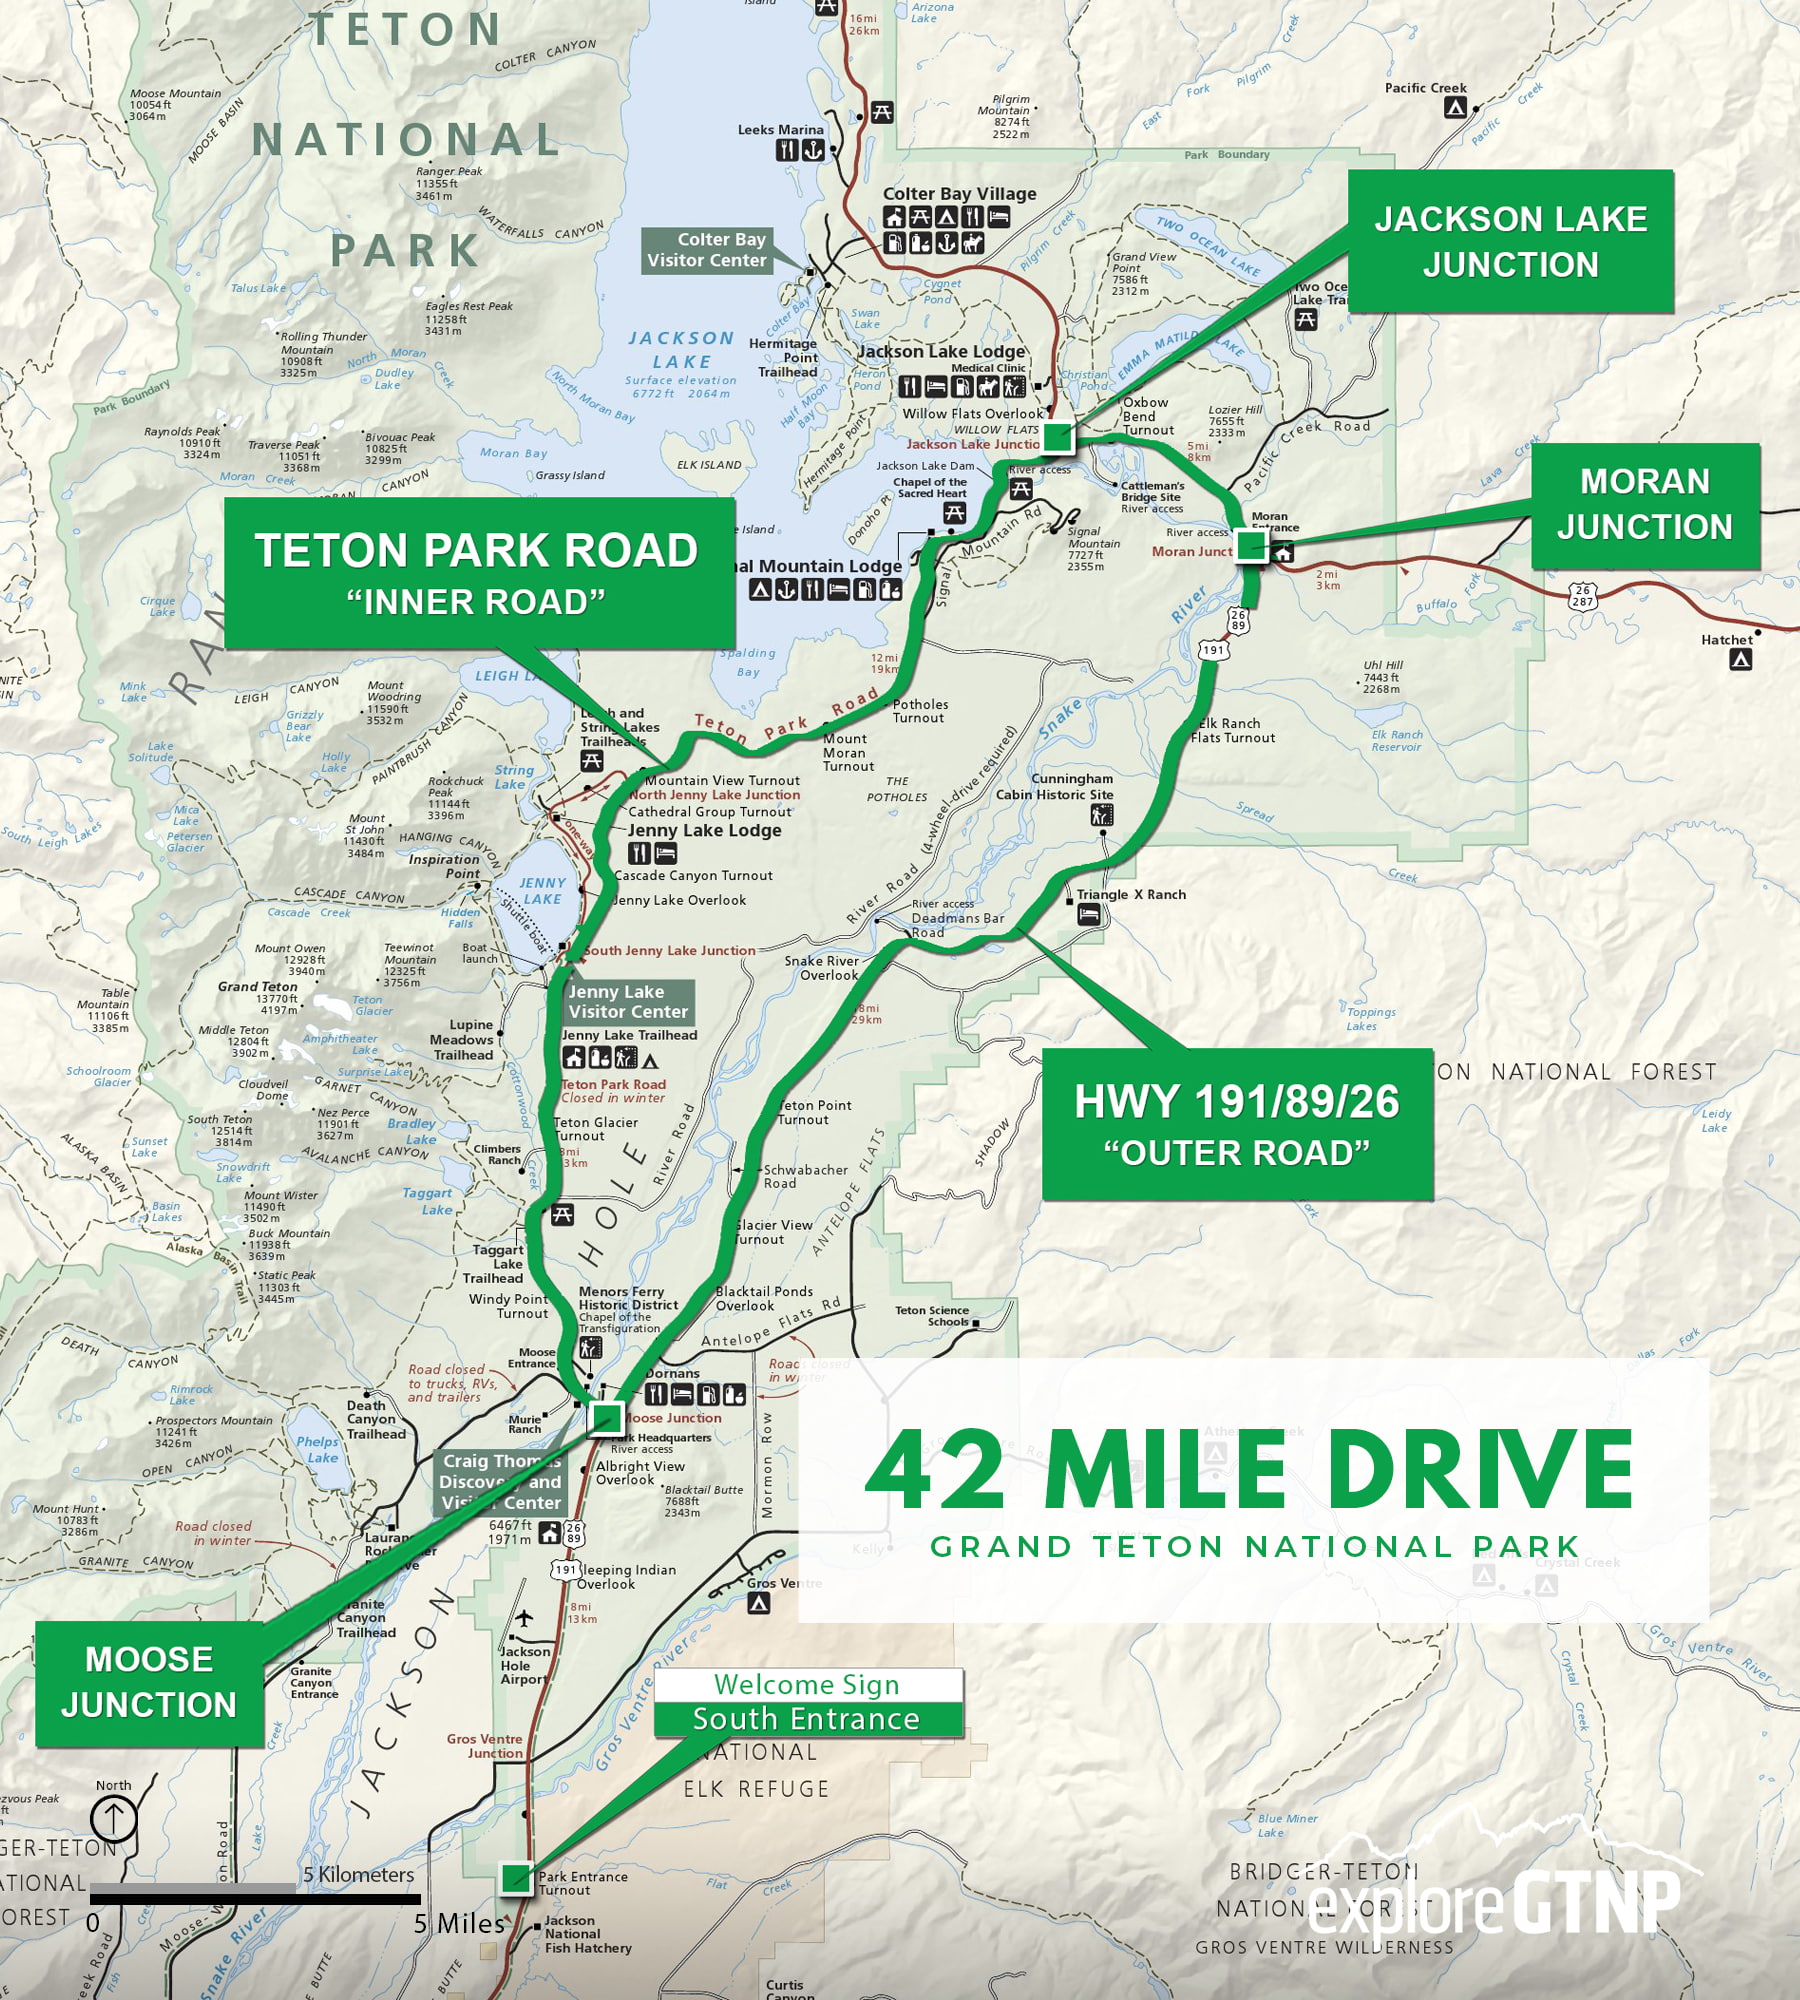 Drive Grand Teton's 42 Mile Scenic Drive - Explore GTNP